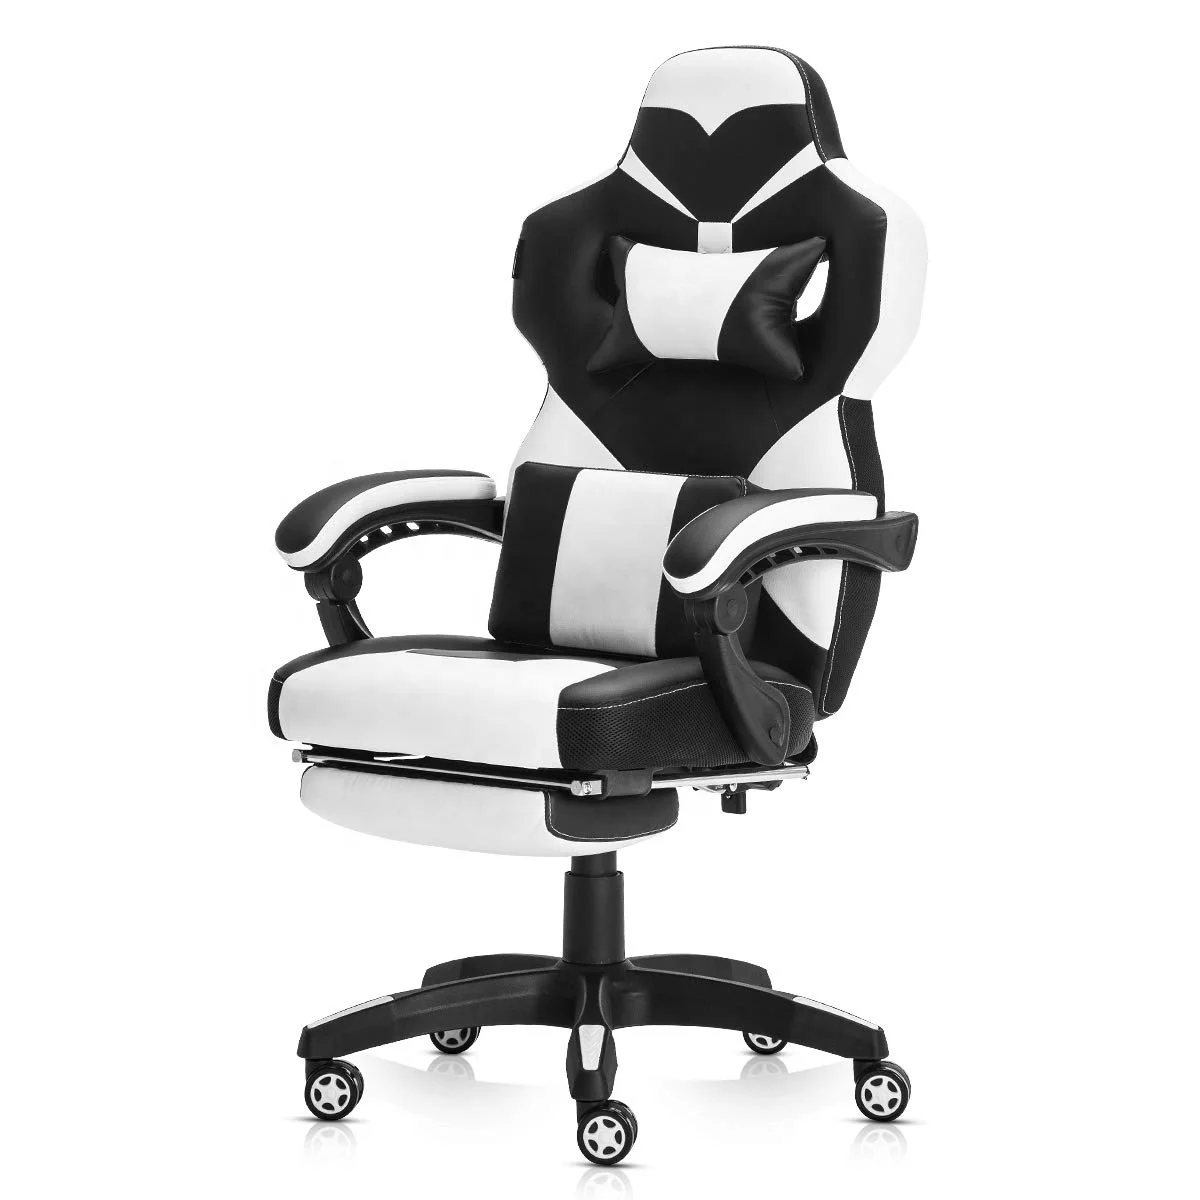  Популярный эргономичный поворотный компьютерный офисный игровой стул SOHO гоночный стиль из искусственной